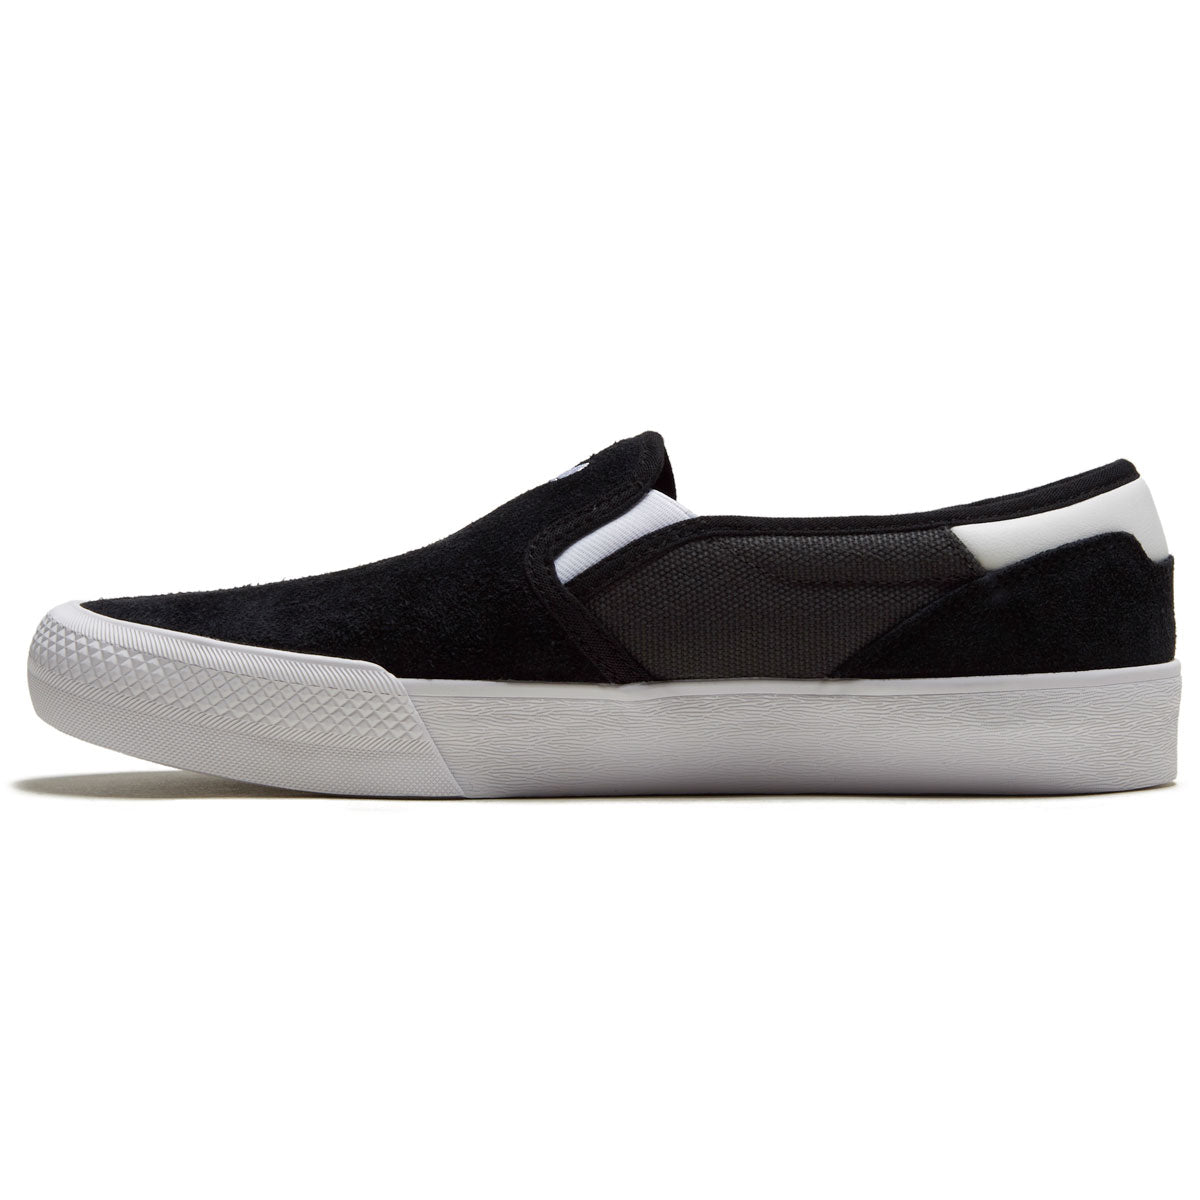 Adidas Shmoofoil Slip On Shoes - Core Black/Grey/White image 2